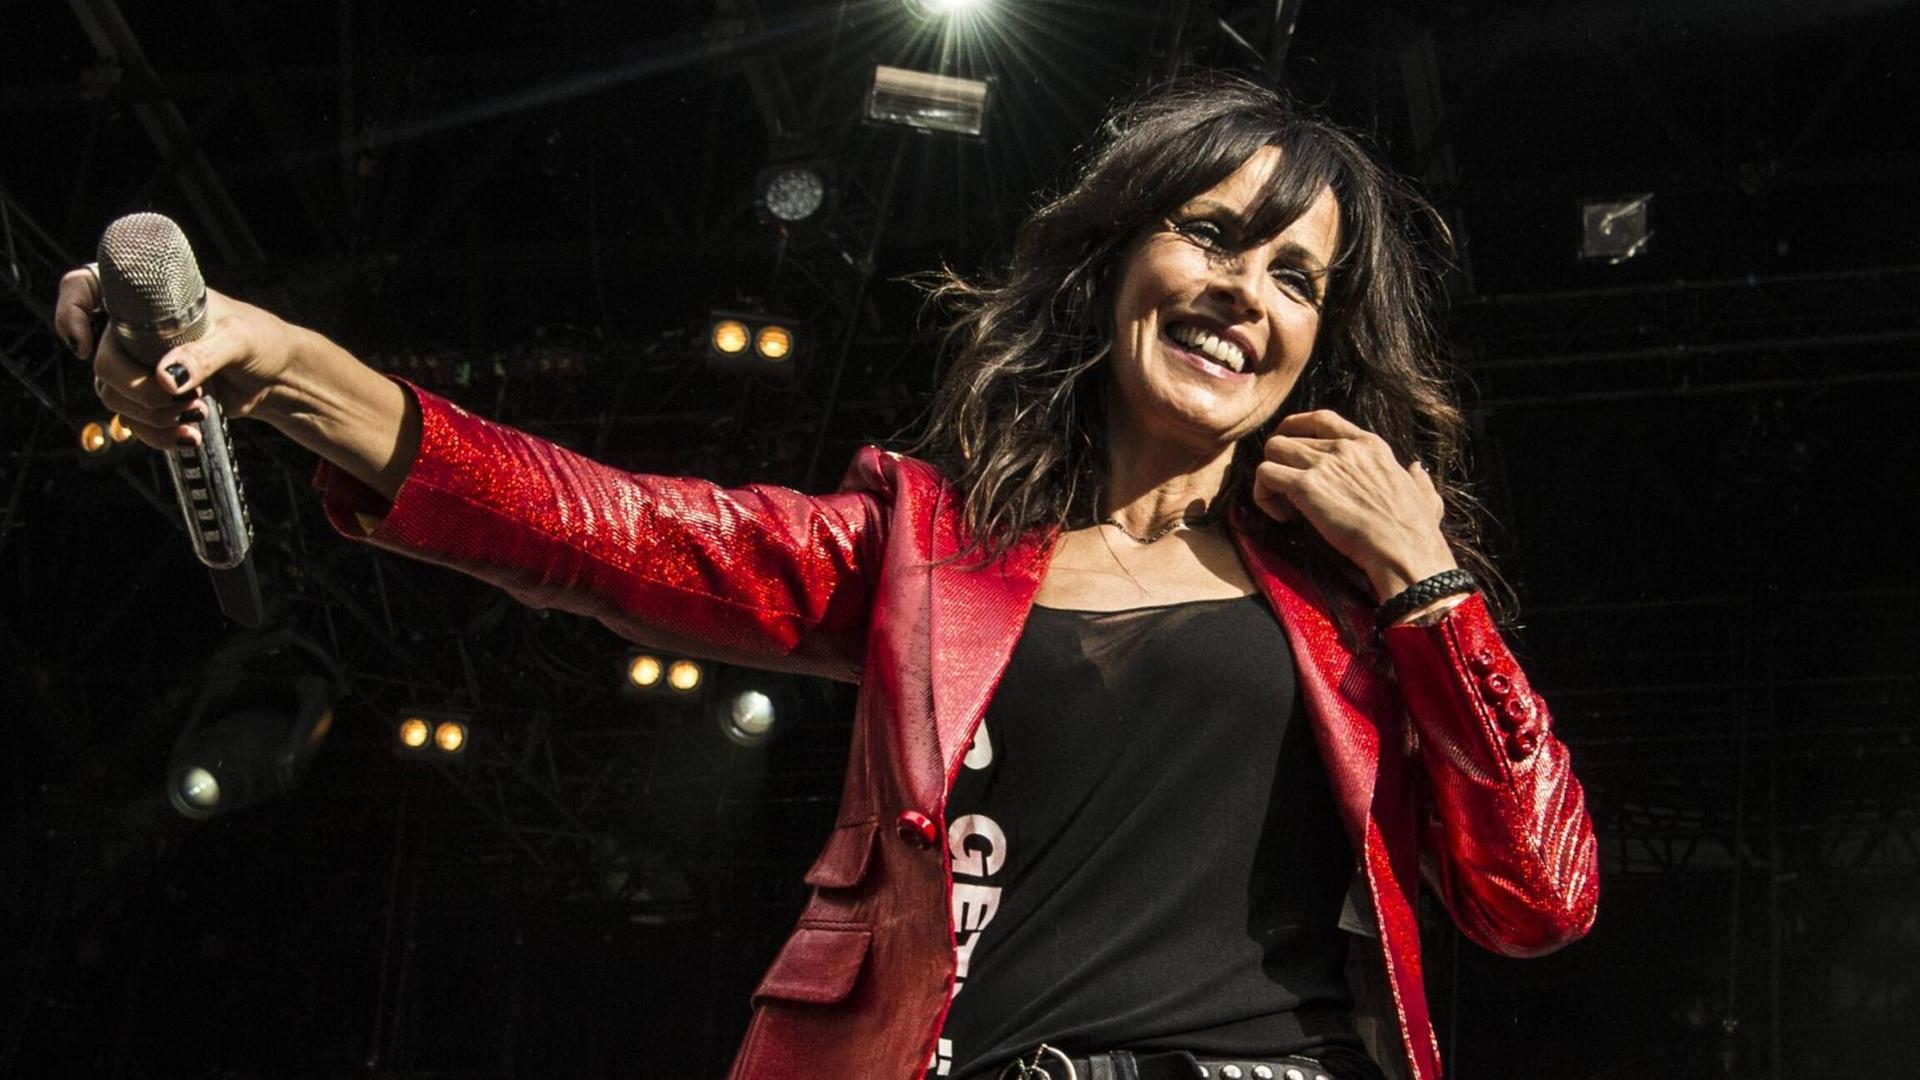 Musikerin Nena steht auf einem Festival am 7. August 2019 in Skanderborg, Dänemark auf der Bühne. Sie trägt eine rote Lederjacke und lächelt ins Publikum.